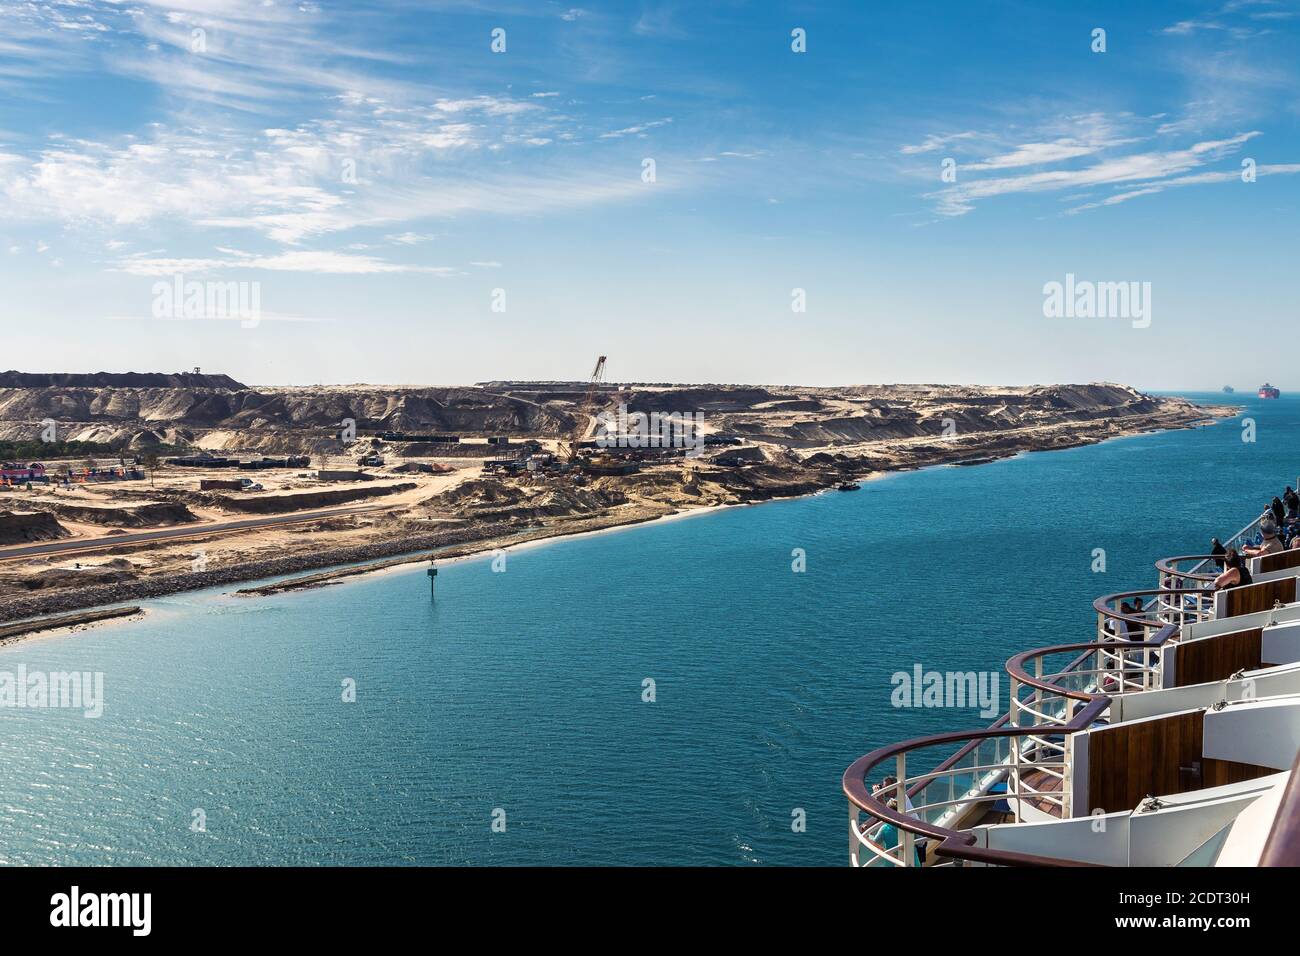 Der Suezkanal - ein Schiffskonvoi mit einer Kreuzfahrt Schiff passiert den neuen östlichen Verlängerungskanal Stockfoto